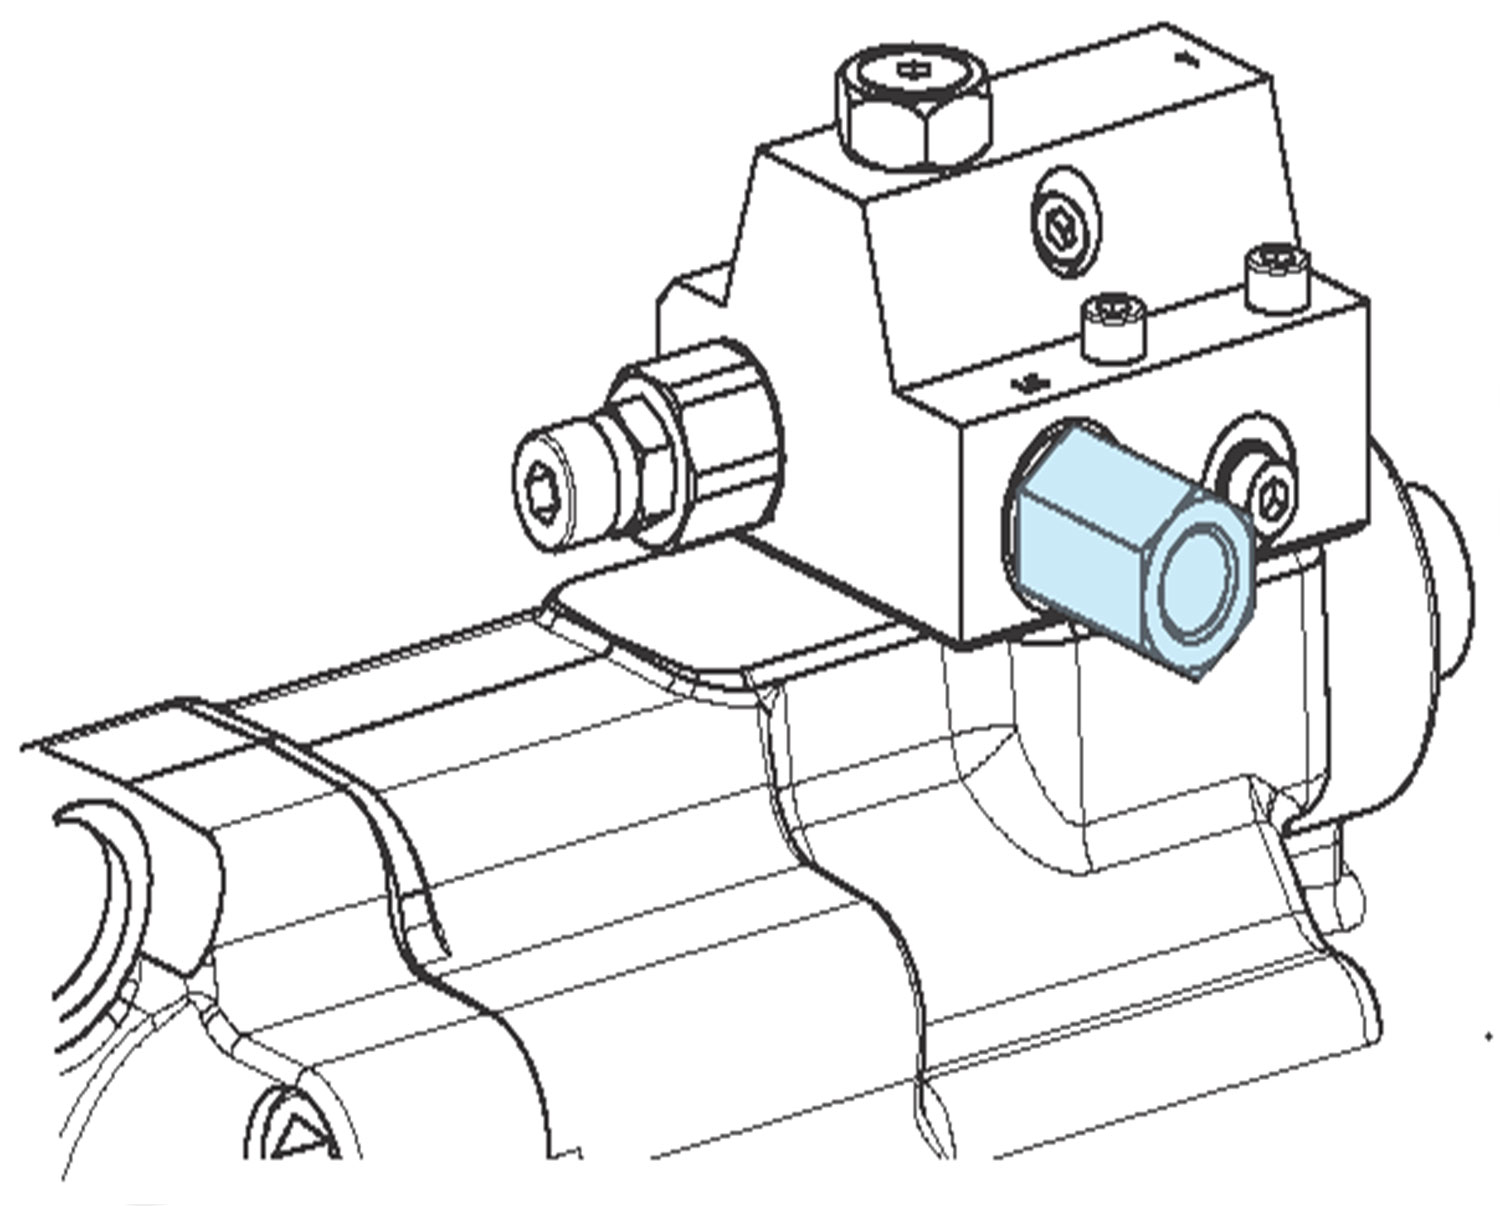 L/S Adapter mit integriertem Schutzfilter von Hydro-Leduc, Skizze